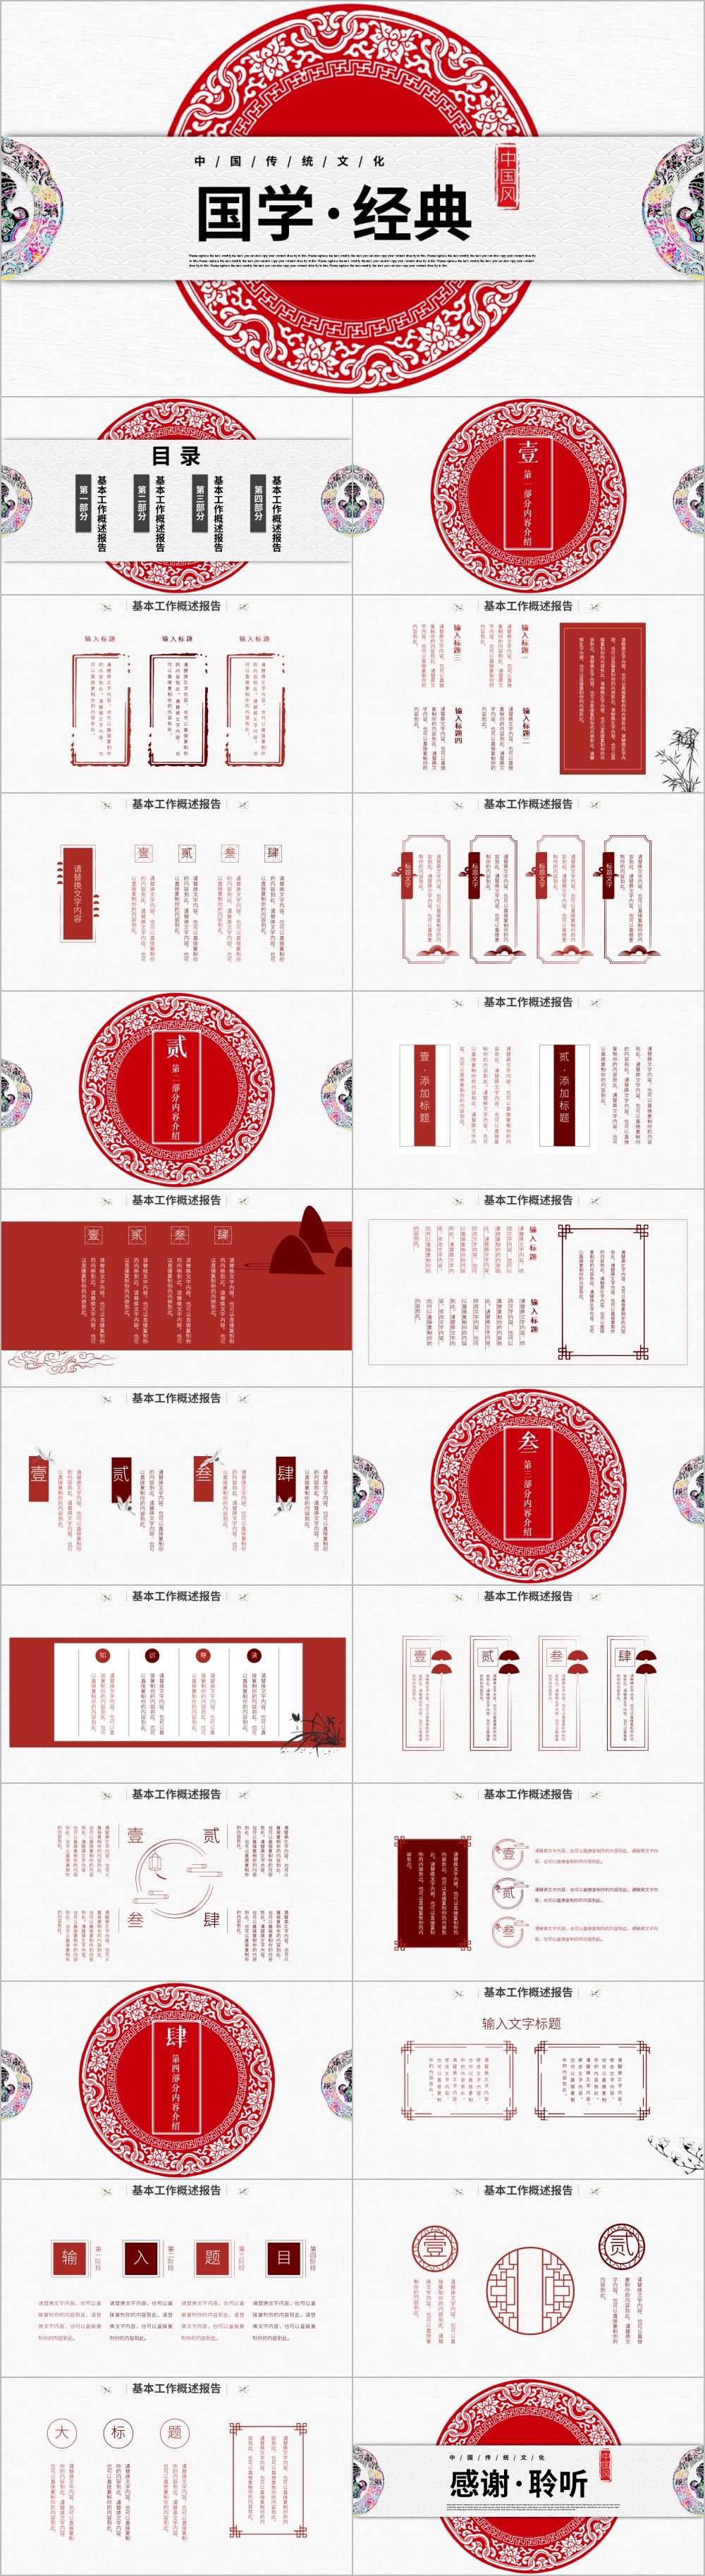 红色花纹国学文化经典古典传统文化PPT模板